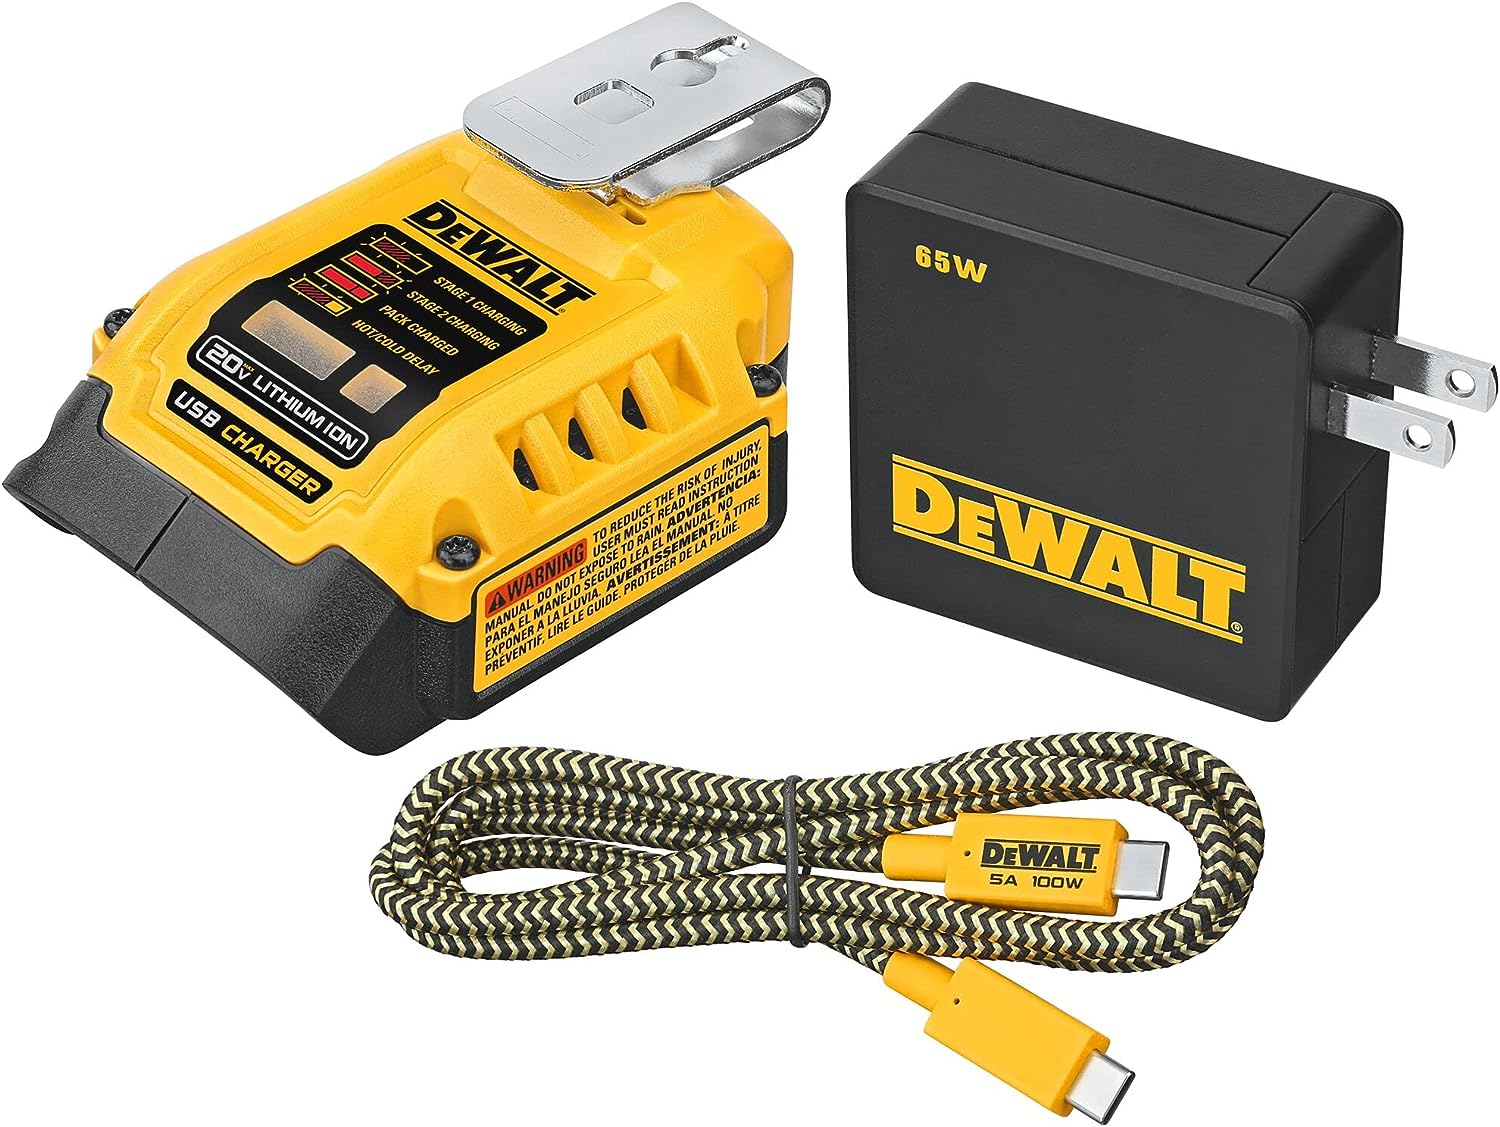 DEWALT Battery Charger and USB Wall Charging Kit, For 20V and 60V Dewalt Batteries (DCB094K) $58.65